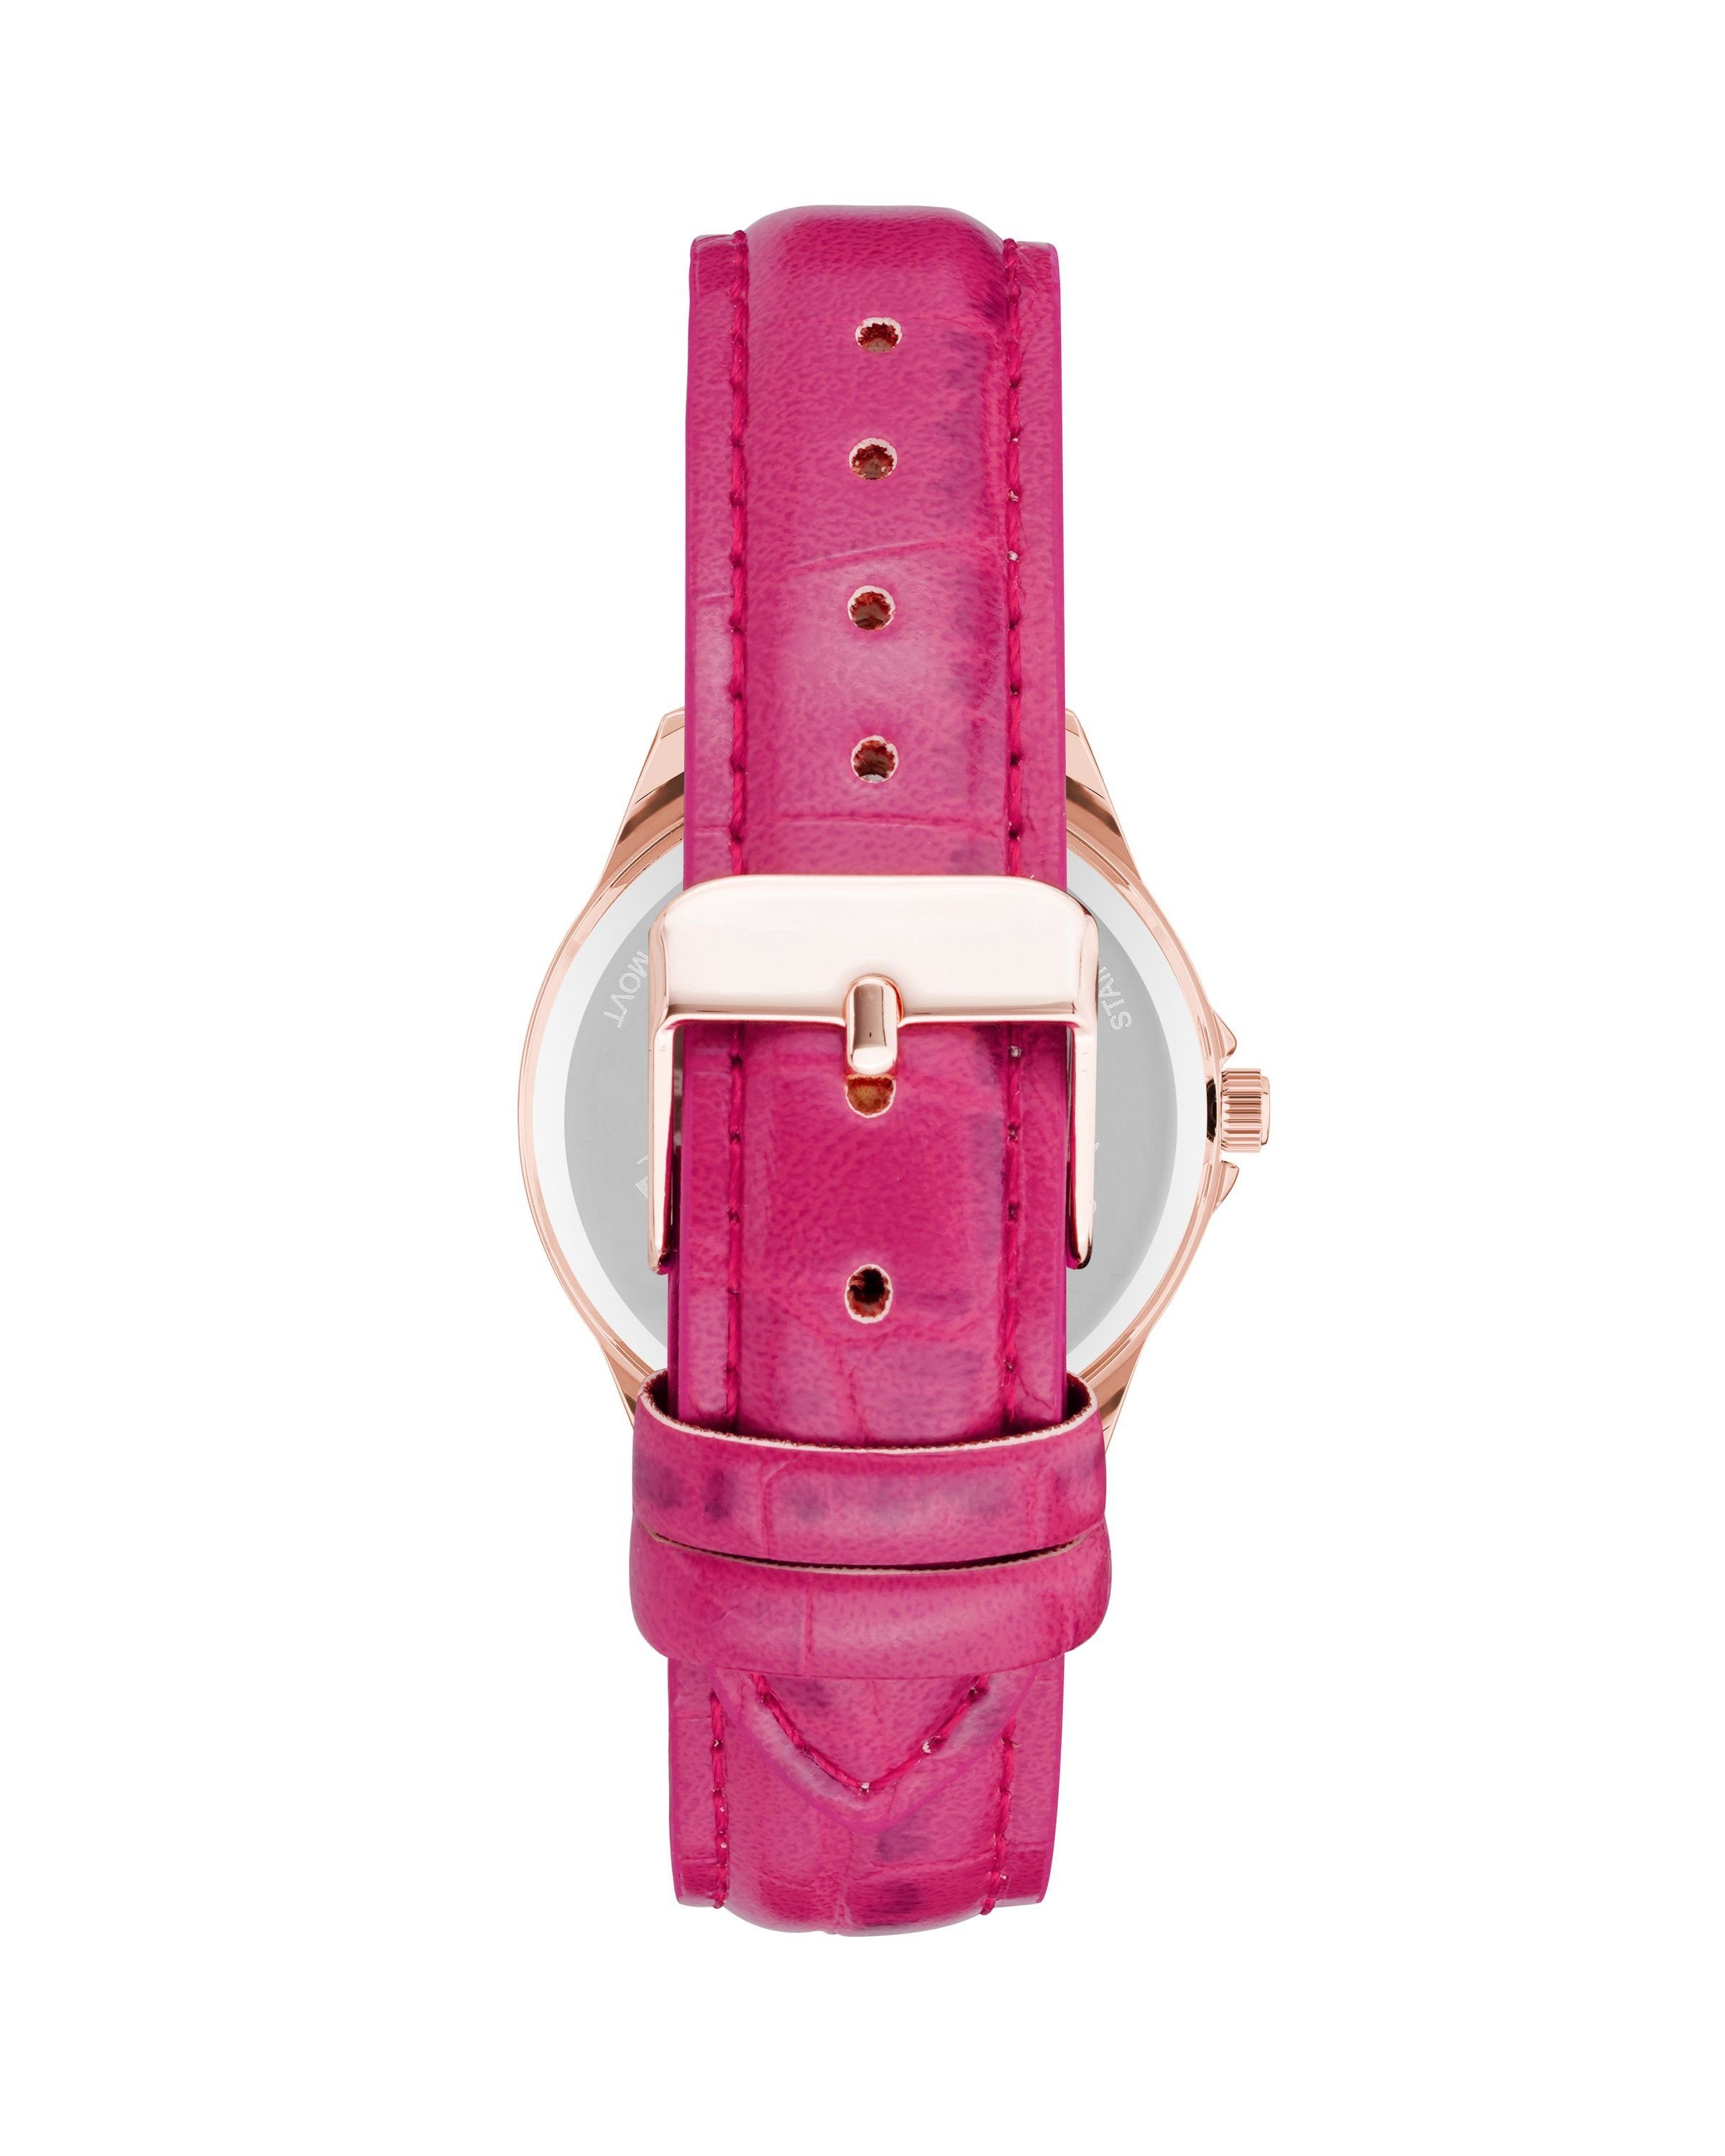 Damen Uhren Juicy Couture Quarzuhr JC/1220RGPK roségold mit Lederarmband und Tachymeter, Leder